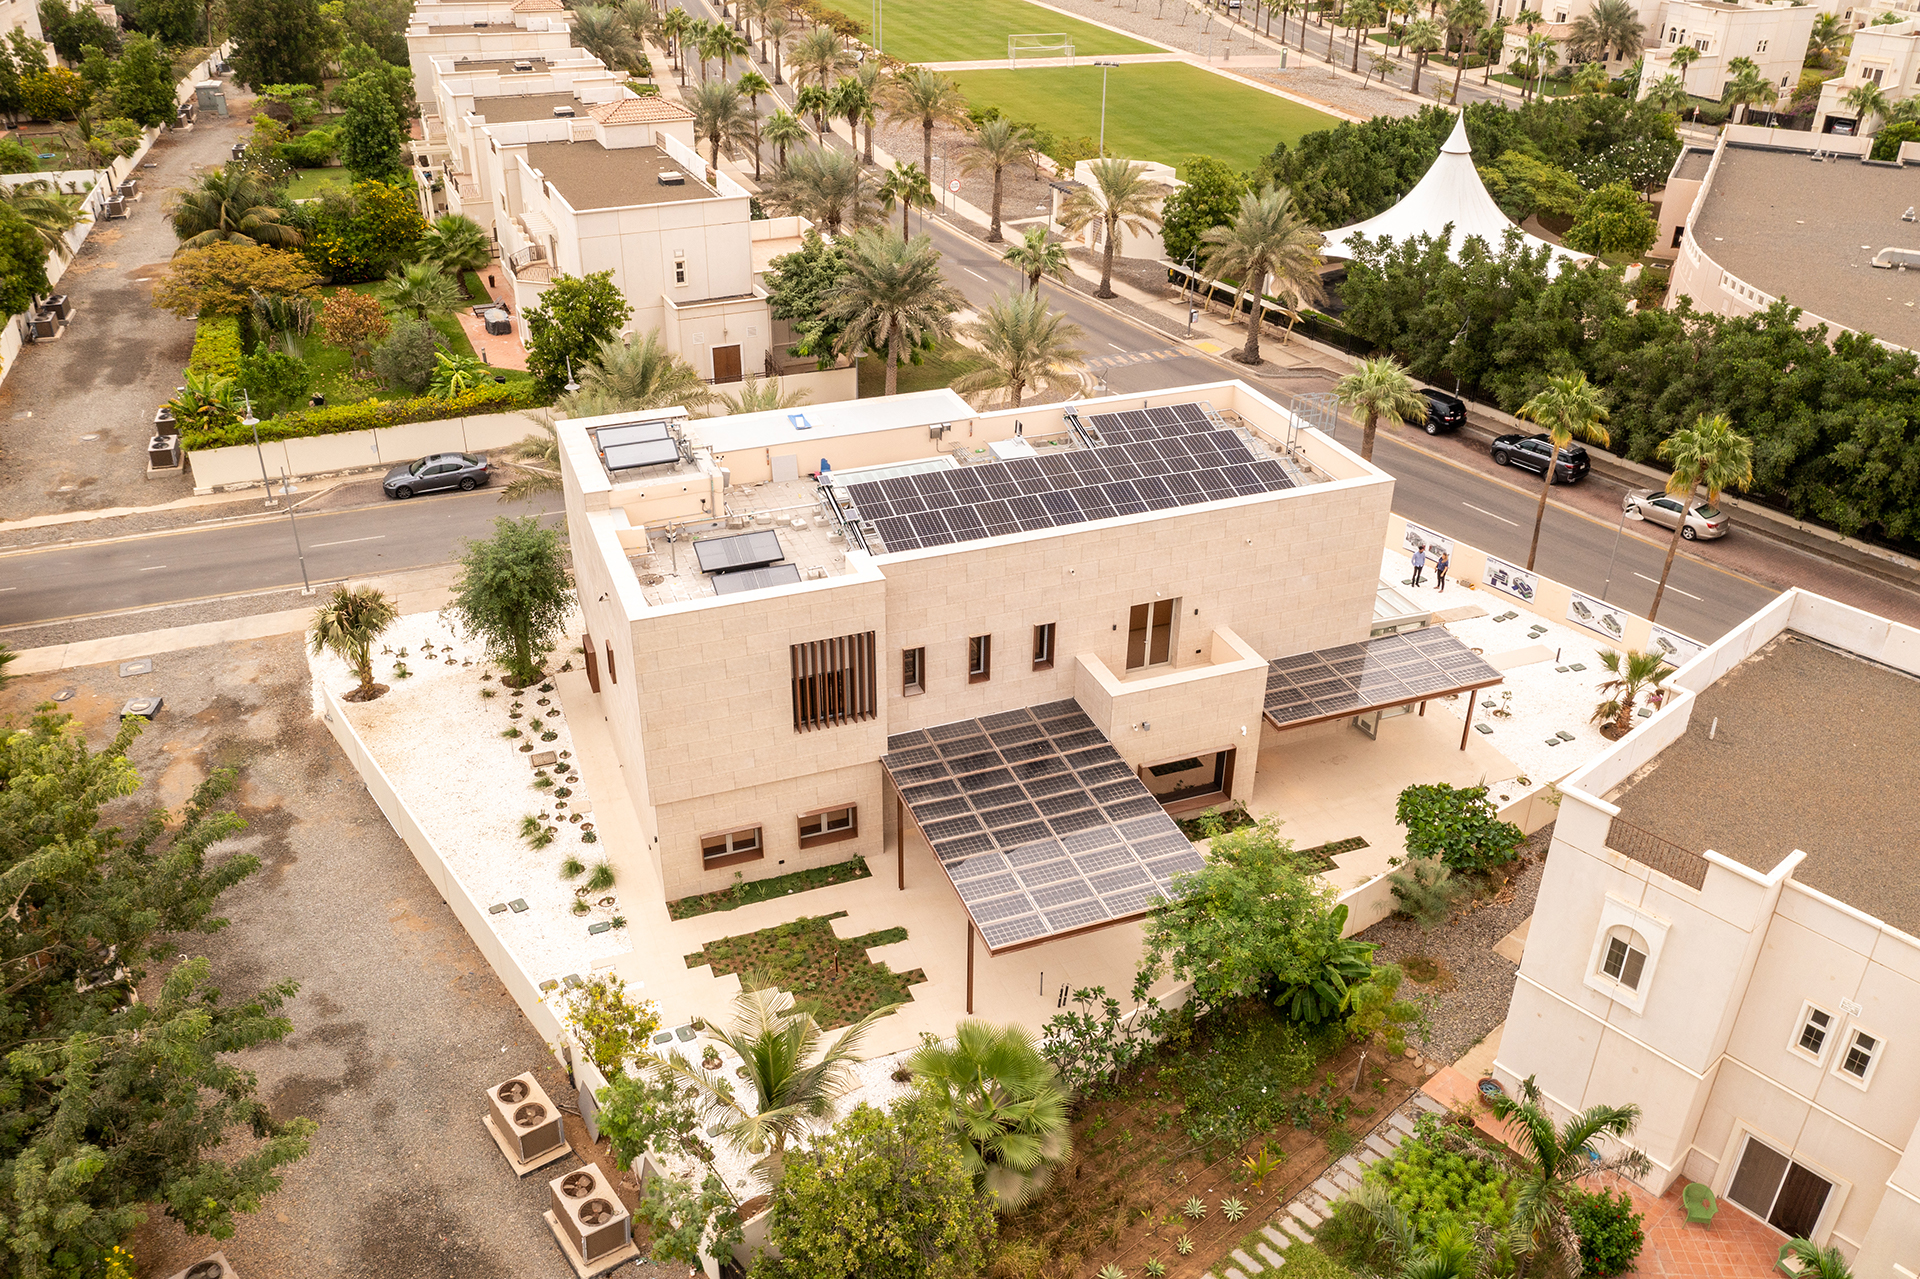 La vivienda smart y ecológica. Tiene 650 metros cuadrados y está diseñada en dos plantas, entre el desierto y el mar, en Thuwal, Arabia Saudita